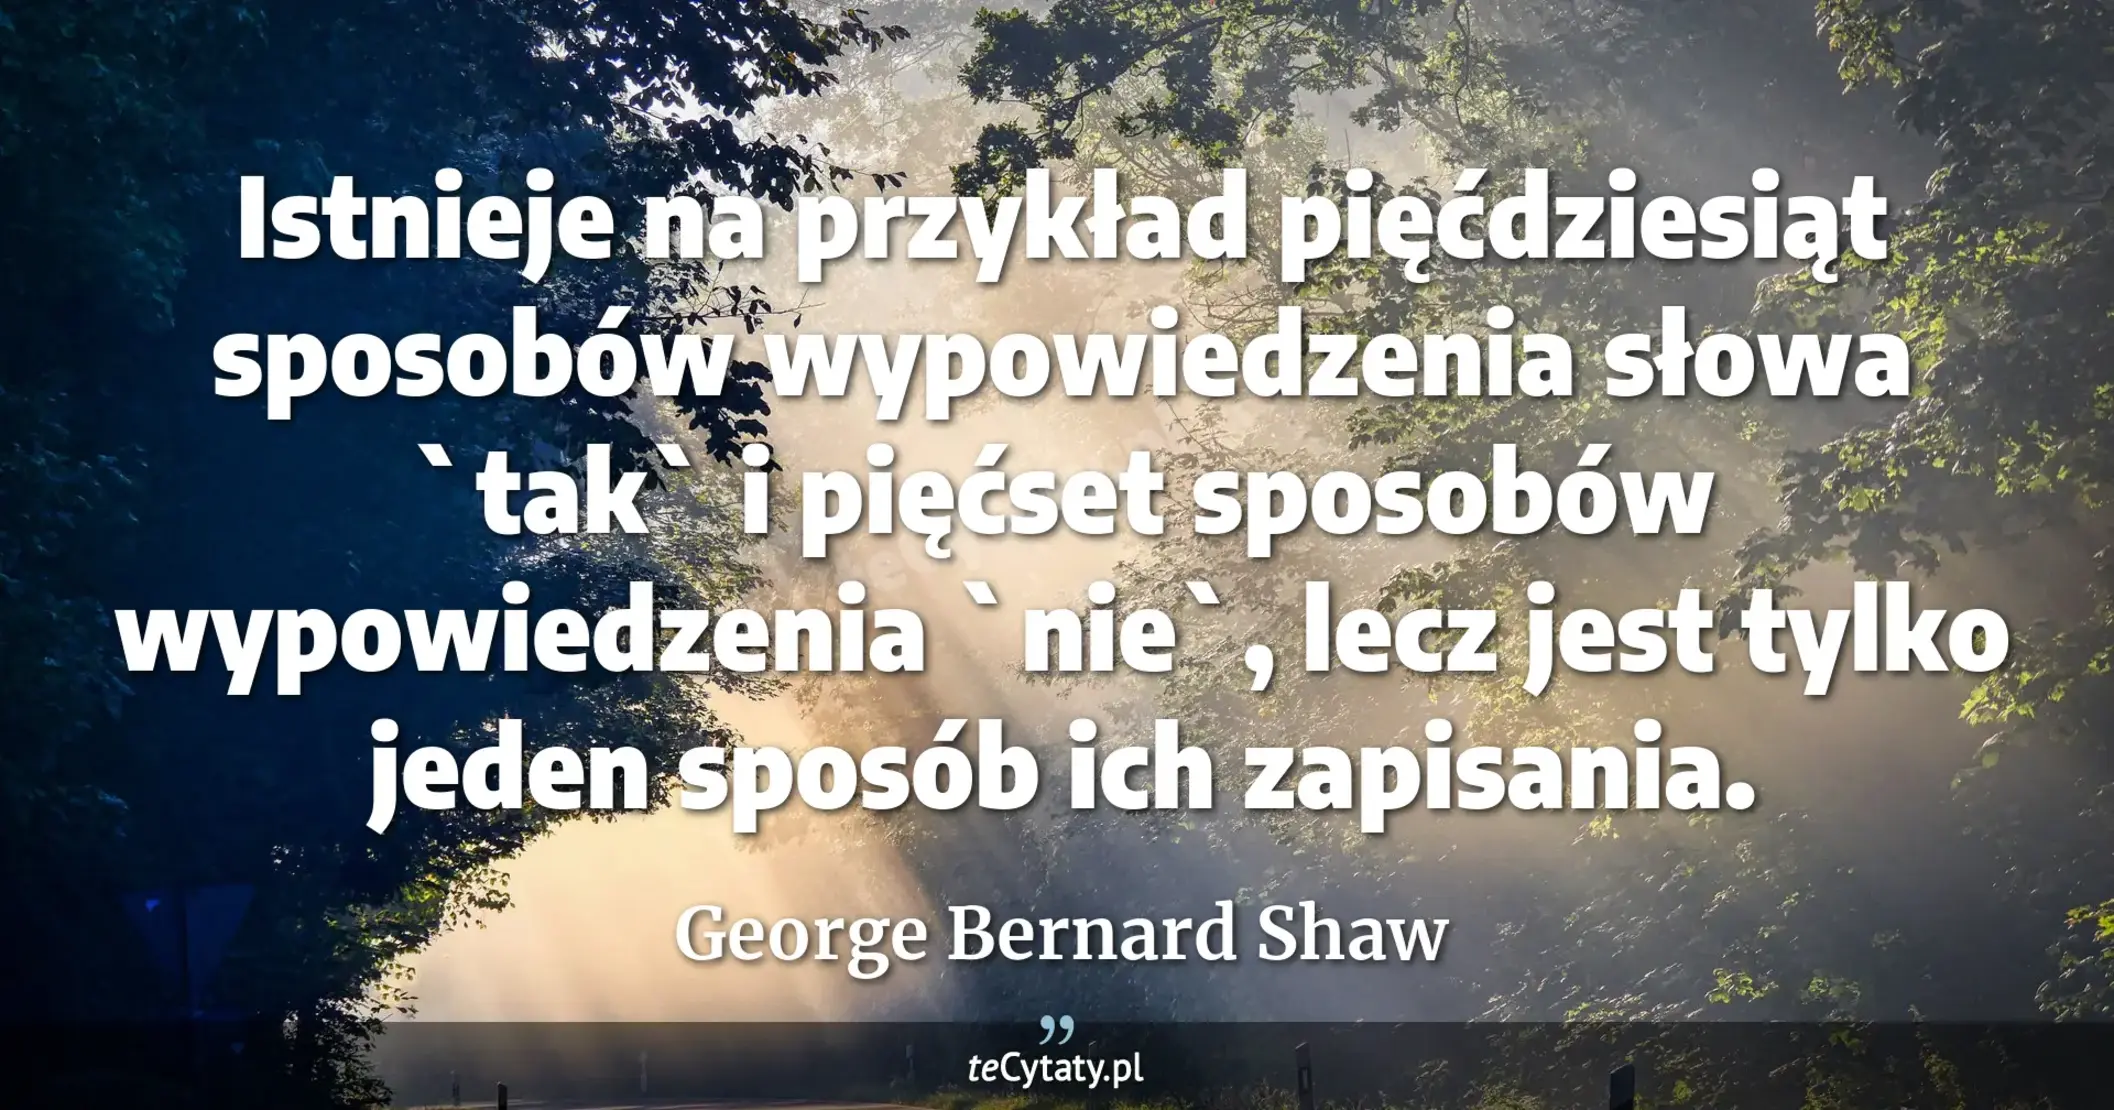 Istnieje na przykład pięćdziesiąt sposobów wypowiedzenia słowa `tak` i pięćset sposobów wypowiedzenia `nie`, lecz jest tylko jeden sposób ich zapisania. - George Bernard Shaw